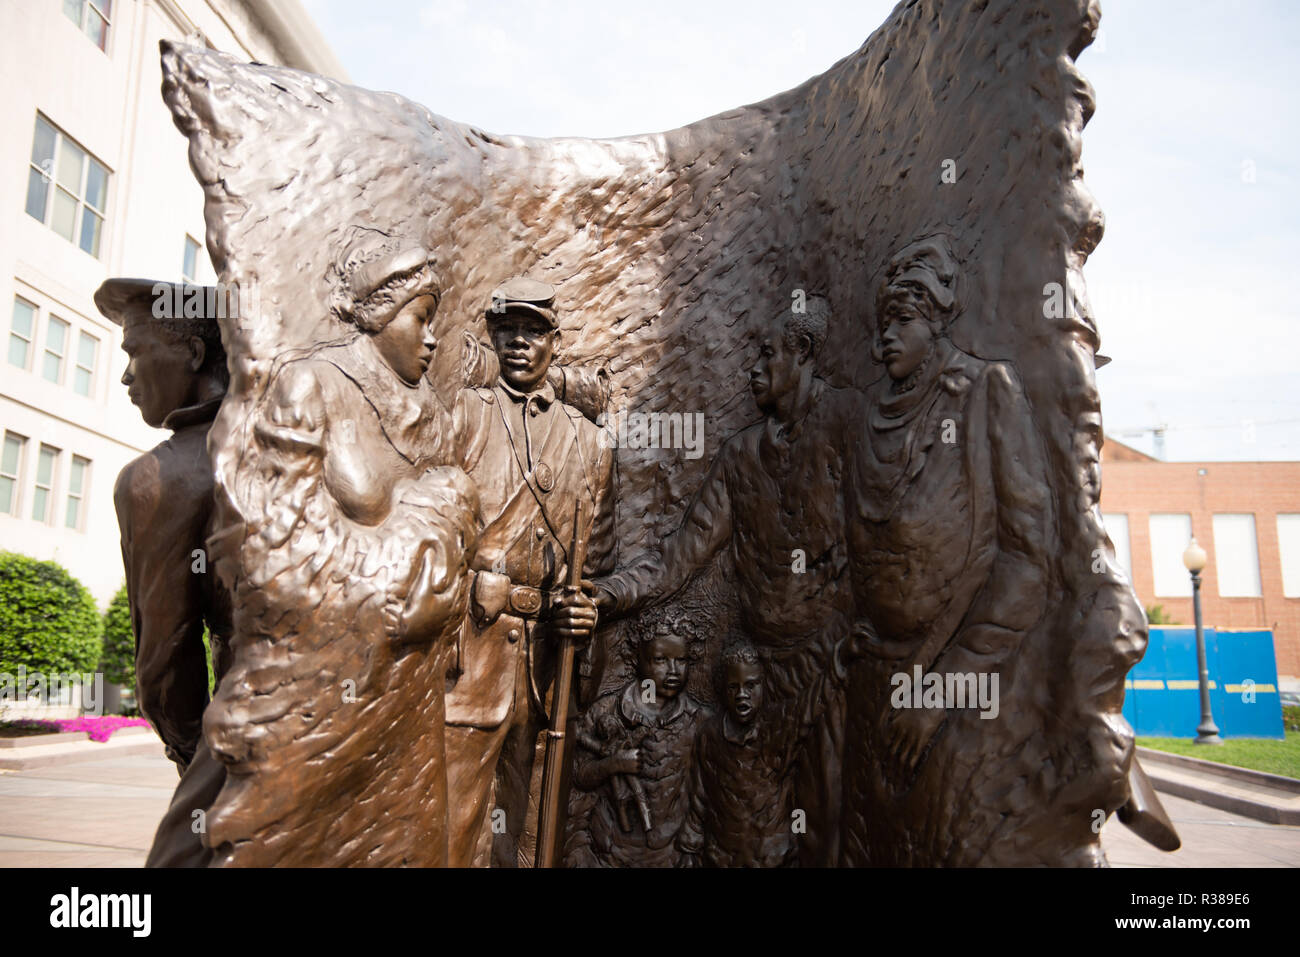 WASHINGTON, DC - African American Civil War Memorial commemora il servizio di 209,145 afro-americano di soldati e circa 7.000 bianco e 2.145 soldati ispanica, pari a circa 220.000, plus approssimativamente 20.000 unsegregated marinai della marina militare, che hanno combattuto per l'Unione nella guerra civile americana, principalmente tra i 175 reggimenti del Stati Uniti truppe colorati. Nel cuore del memorial è una scultura da ed Hamilton ha chiamato lo spirito di libertà. È circondato da pannelli con l'elenco dei nomi di coloro che hanno servito durante la guerra. Il museo è situato nella zona nordovest di Washington DC in U Street tendere Foto Stock